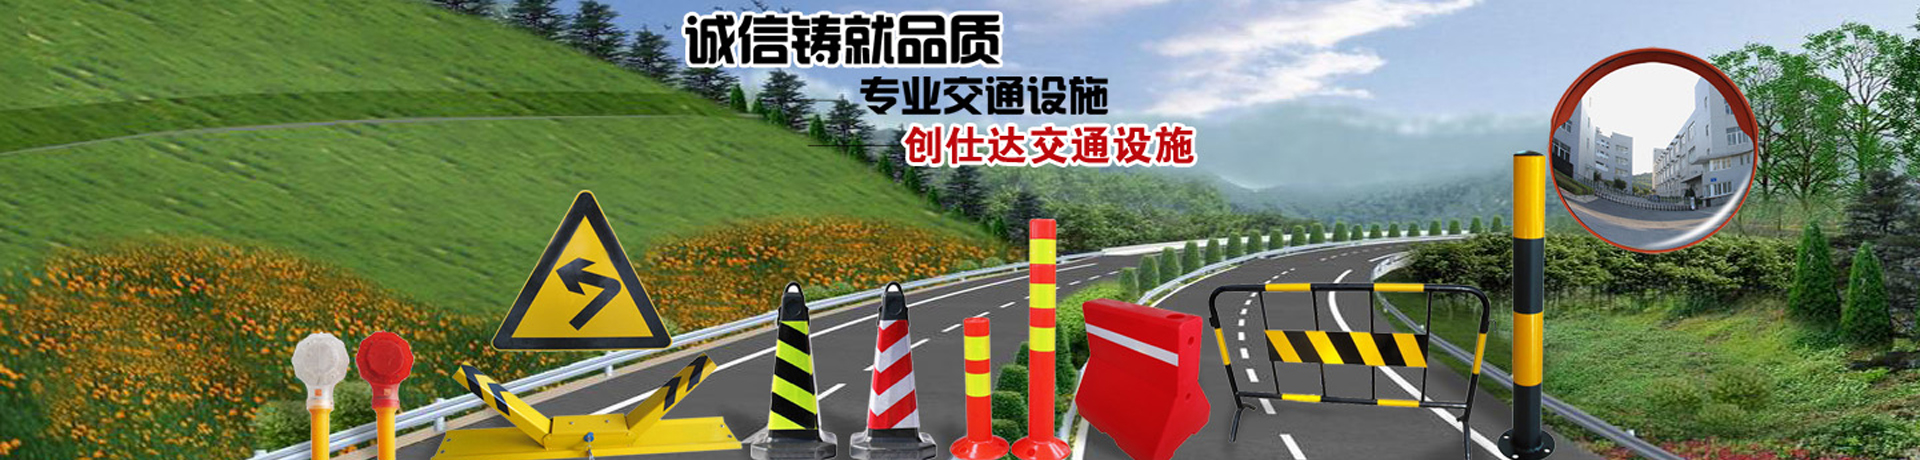 道路标线涂料的施工方式云南昆明施划交通标线告诉你